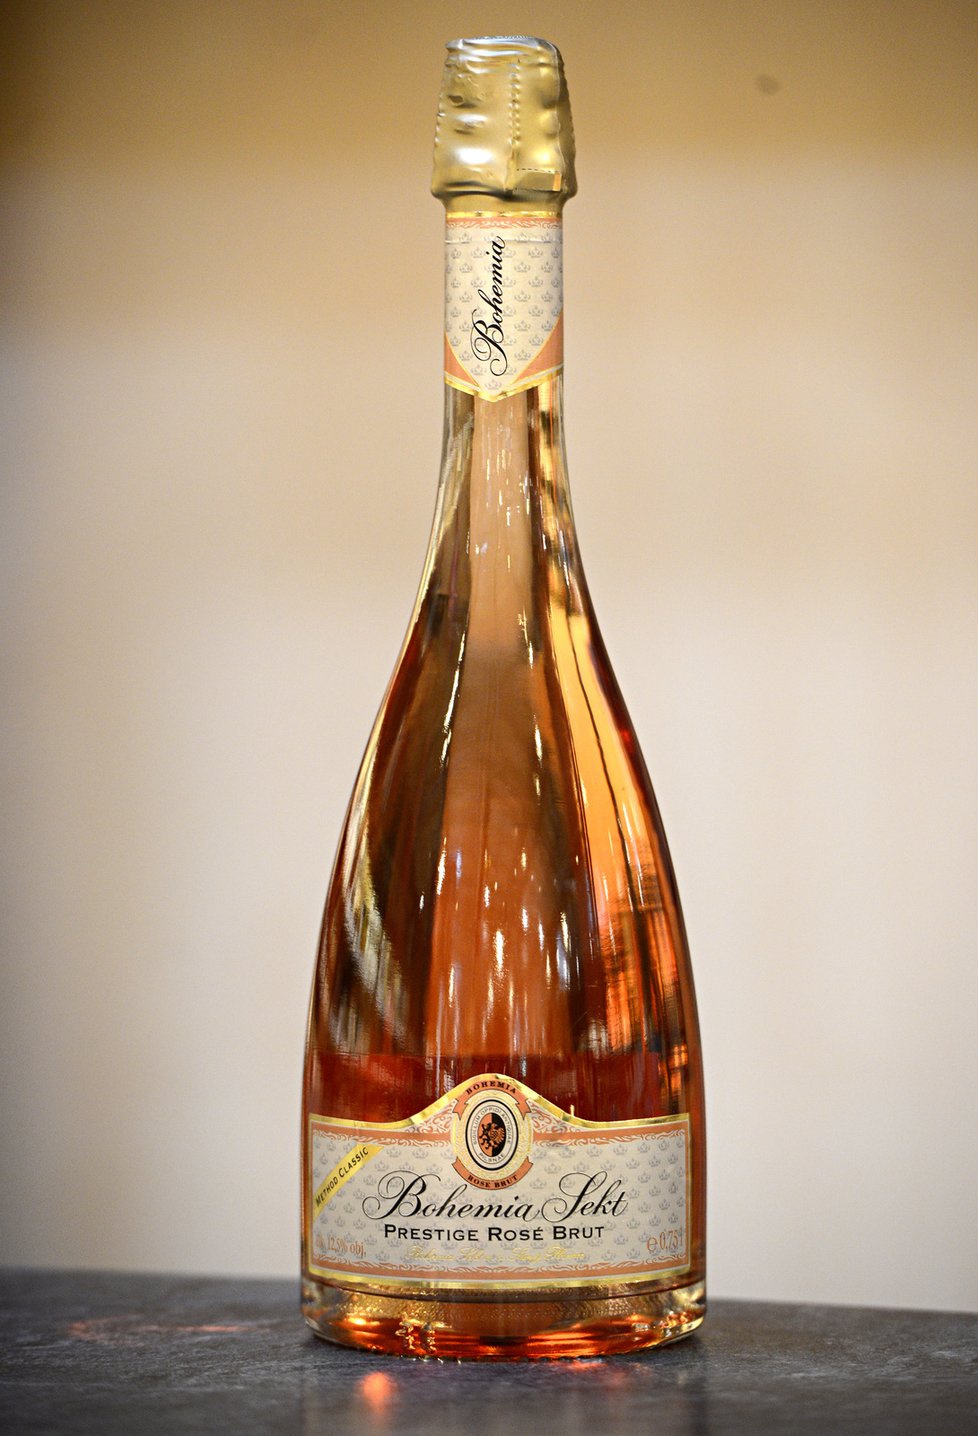 Bohemia sekt Prestige rosé: Díky průhlédné lahvi vyniká jeho krásná lososvá barva. Doporučuji k štědrovečerní večeři.